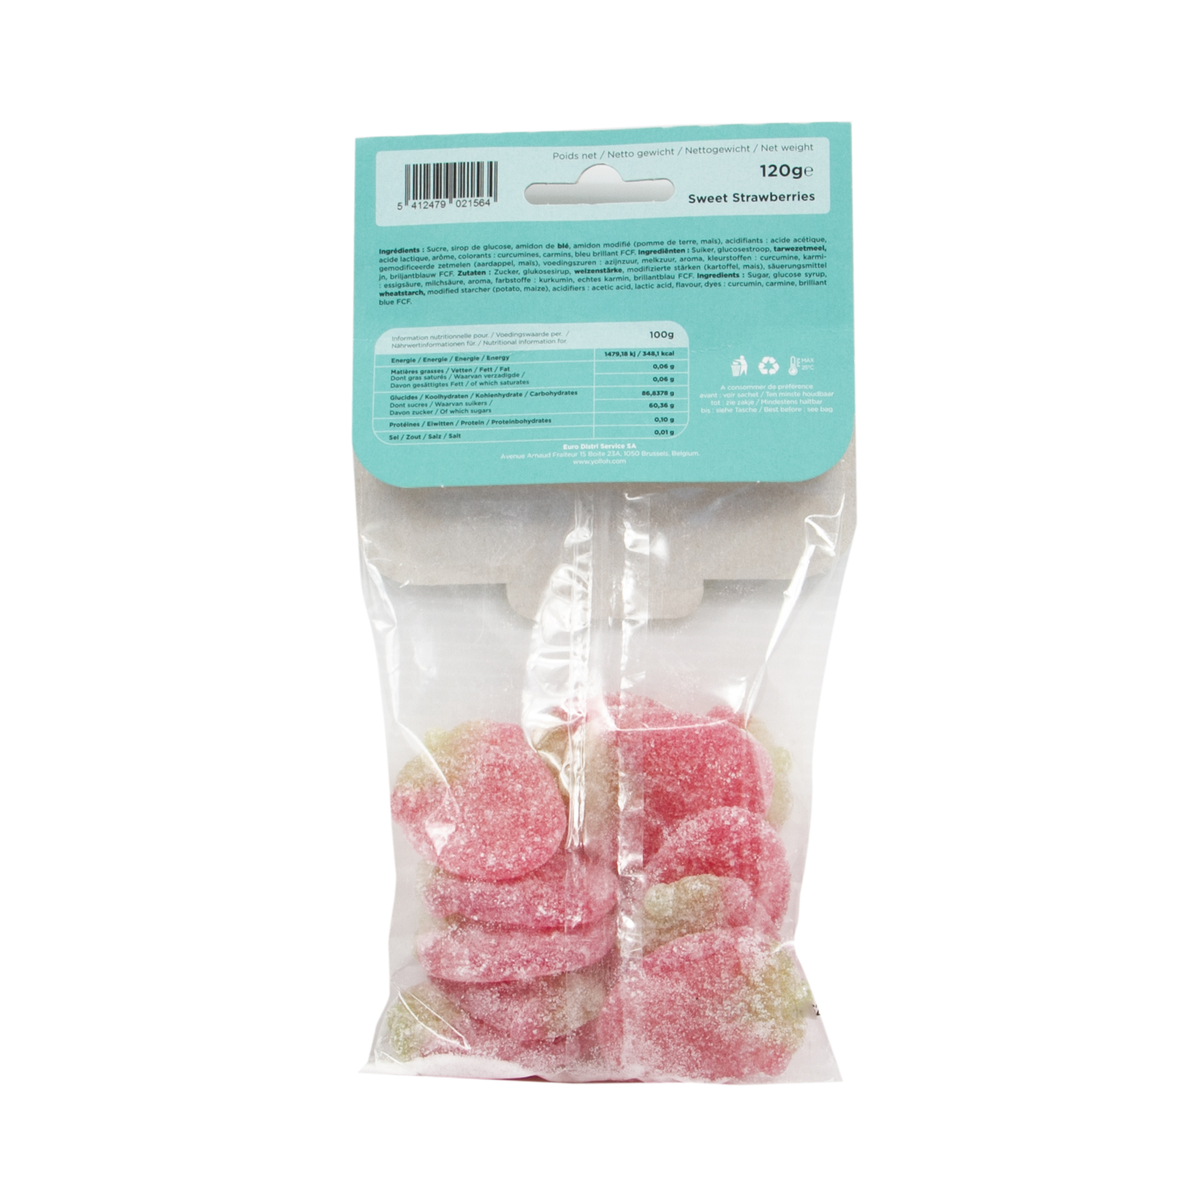 Yolloh Taste Of Pleasure Sweet Strawberries 120g Online At Best Price Candy Bags Lulu Qatar 4193